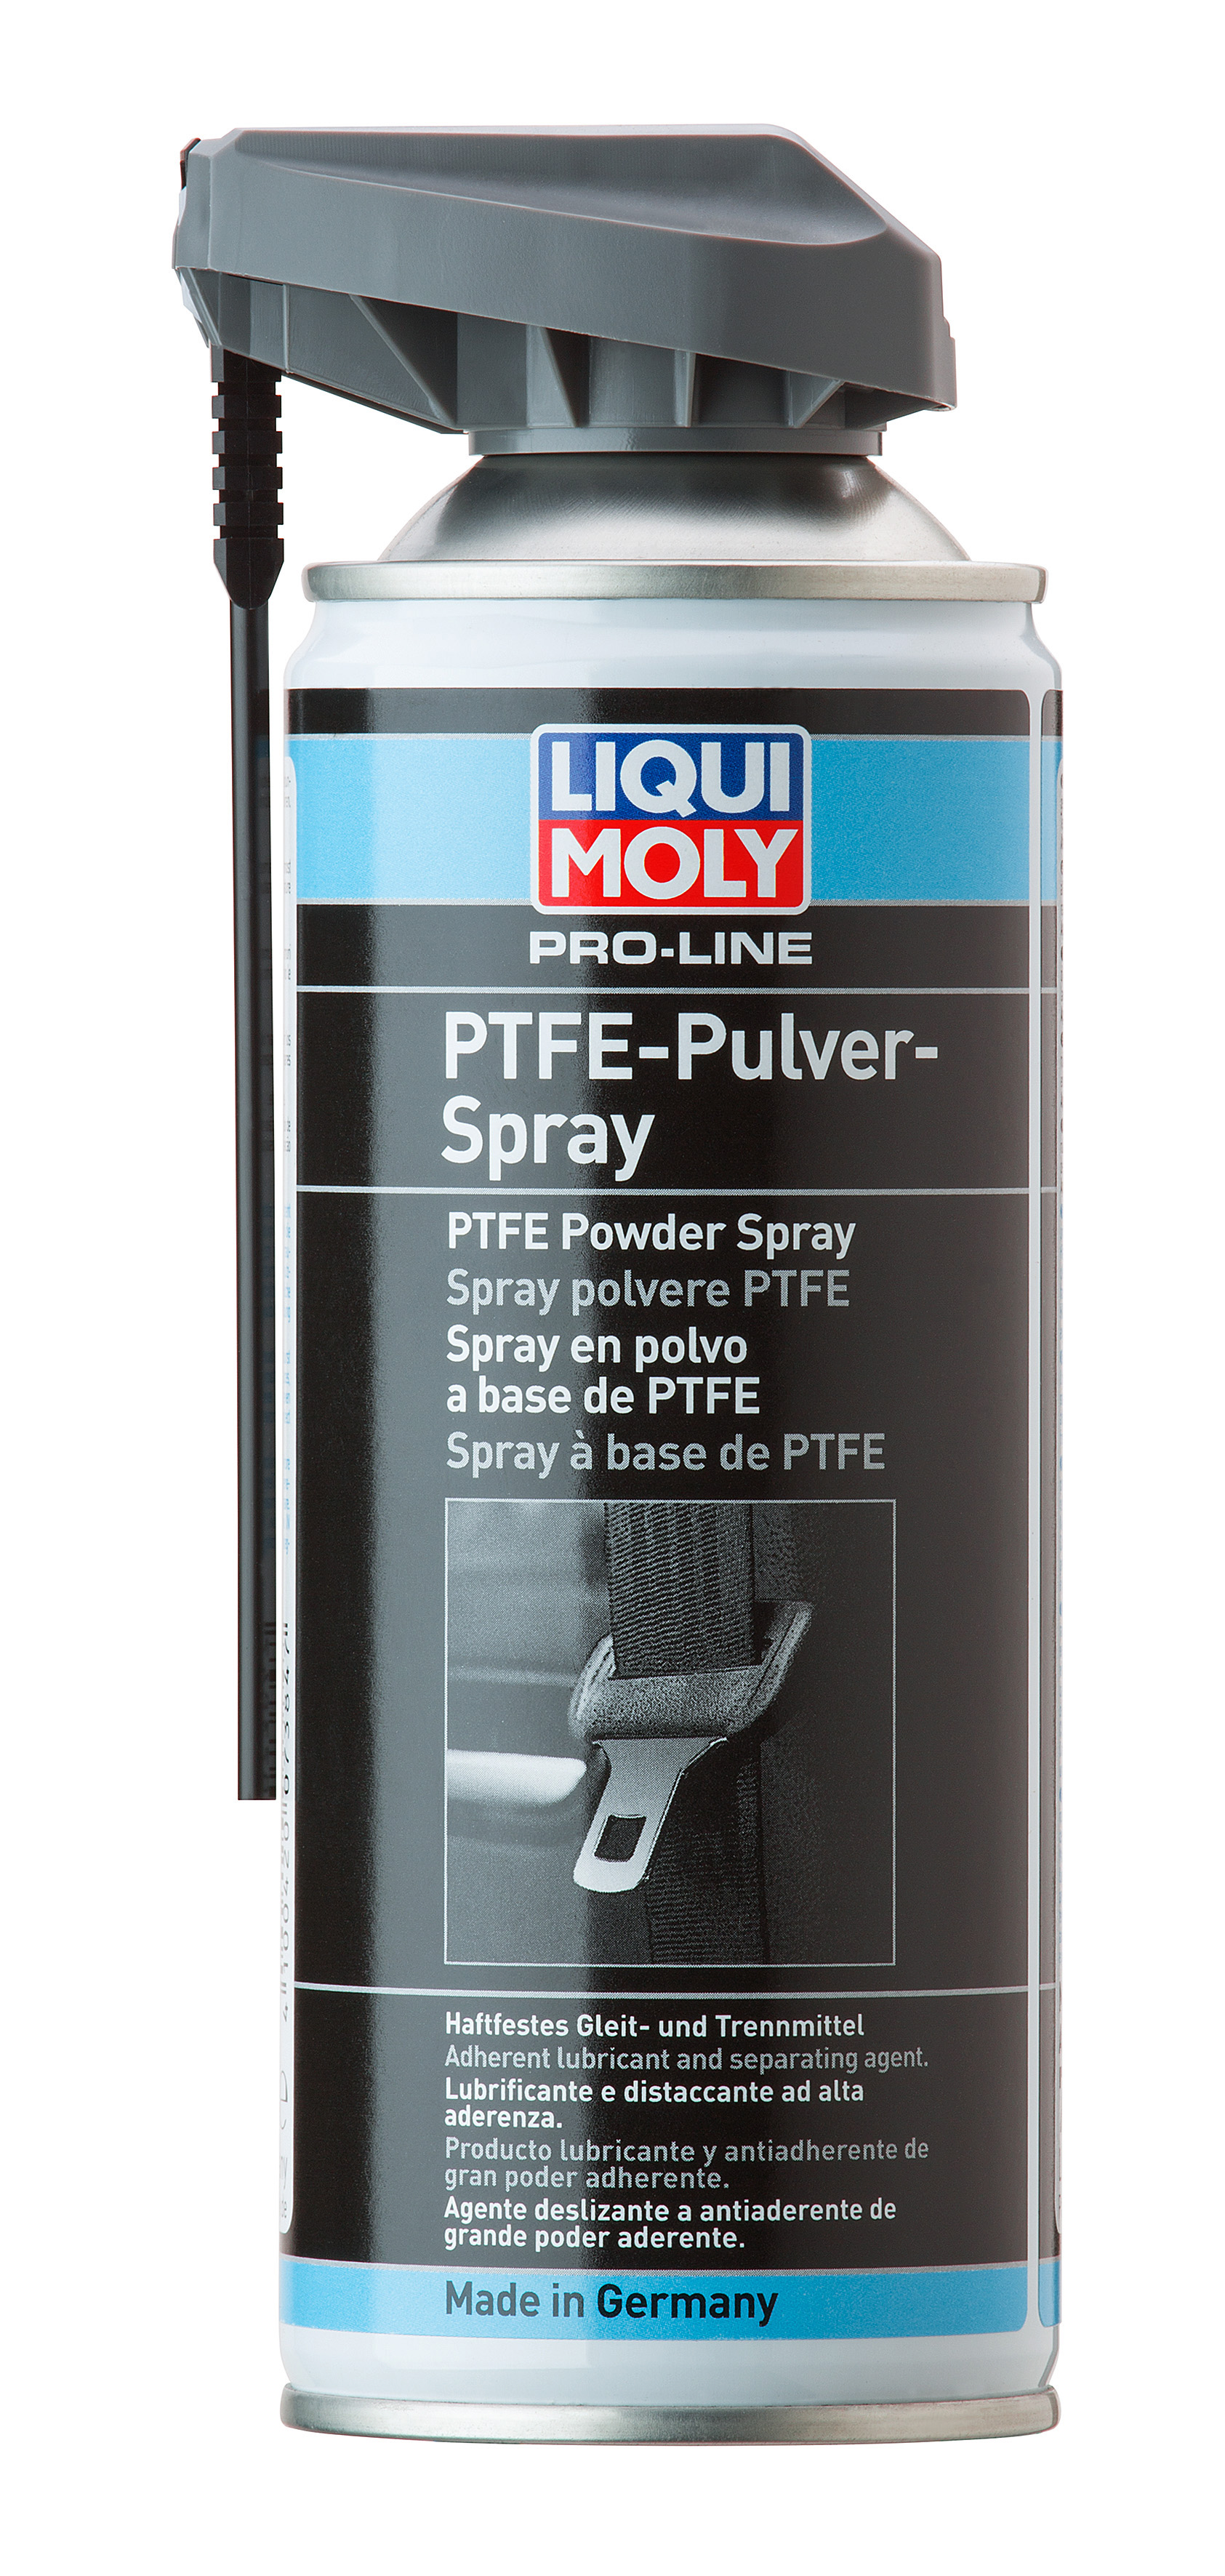 Тефлоновый спрей Liqui Moly Pro-Line PTFE-Pulver-Spray